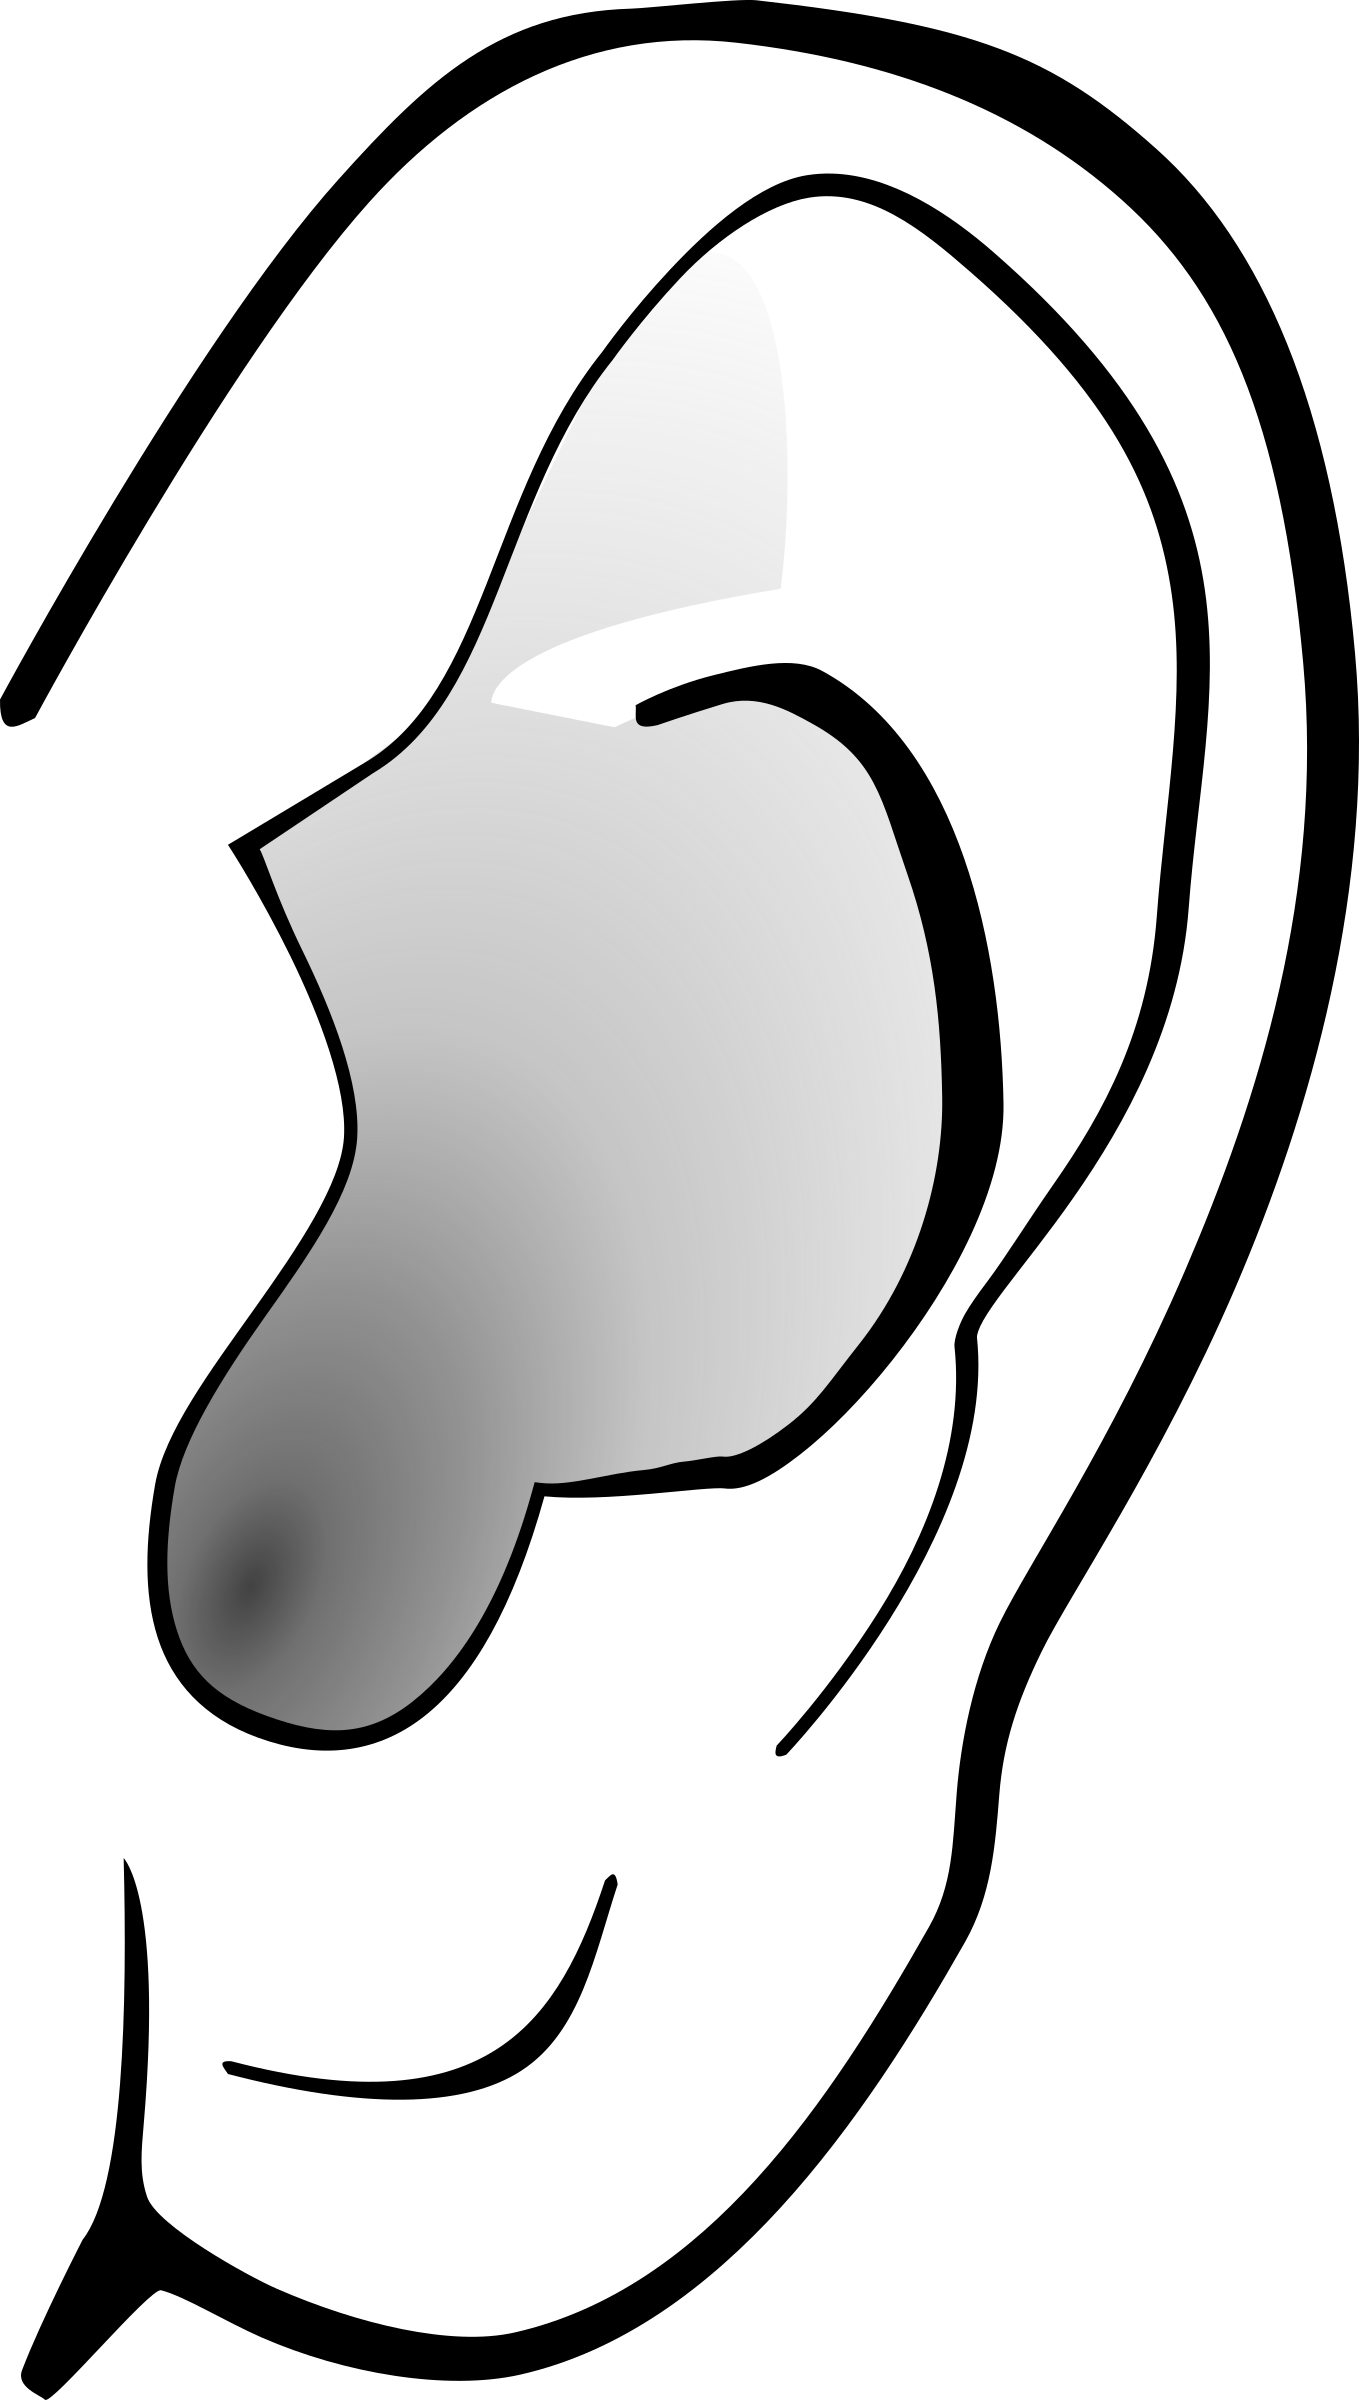 Ear Lineart (1359x2400)